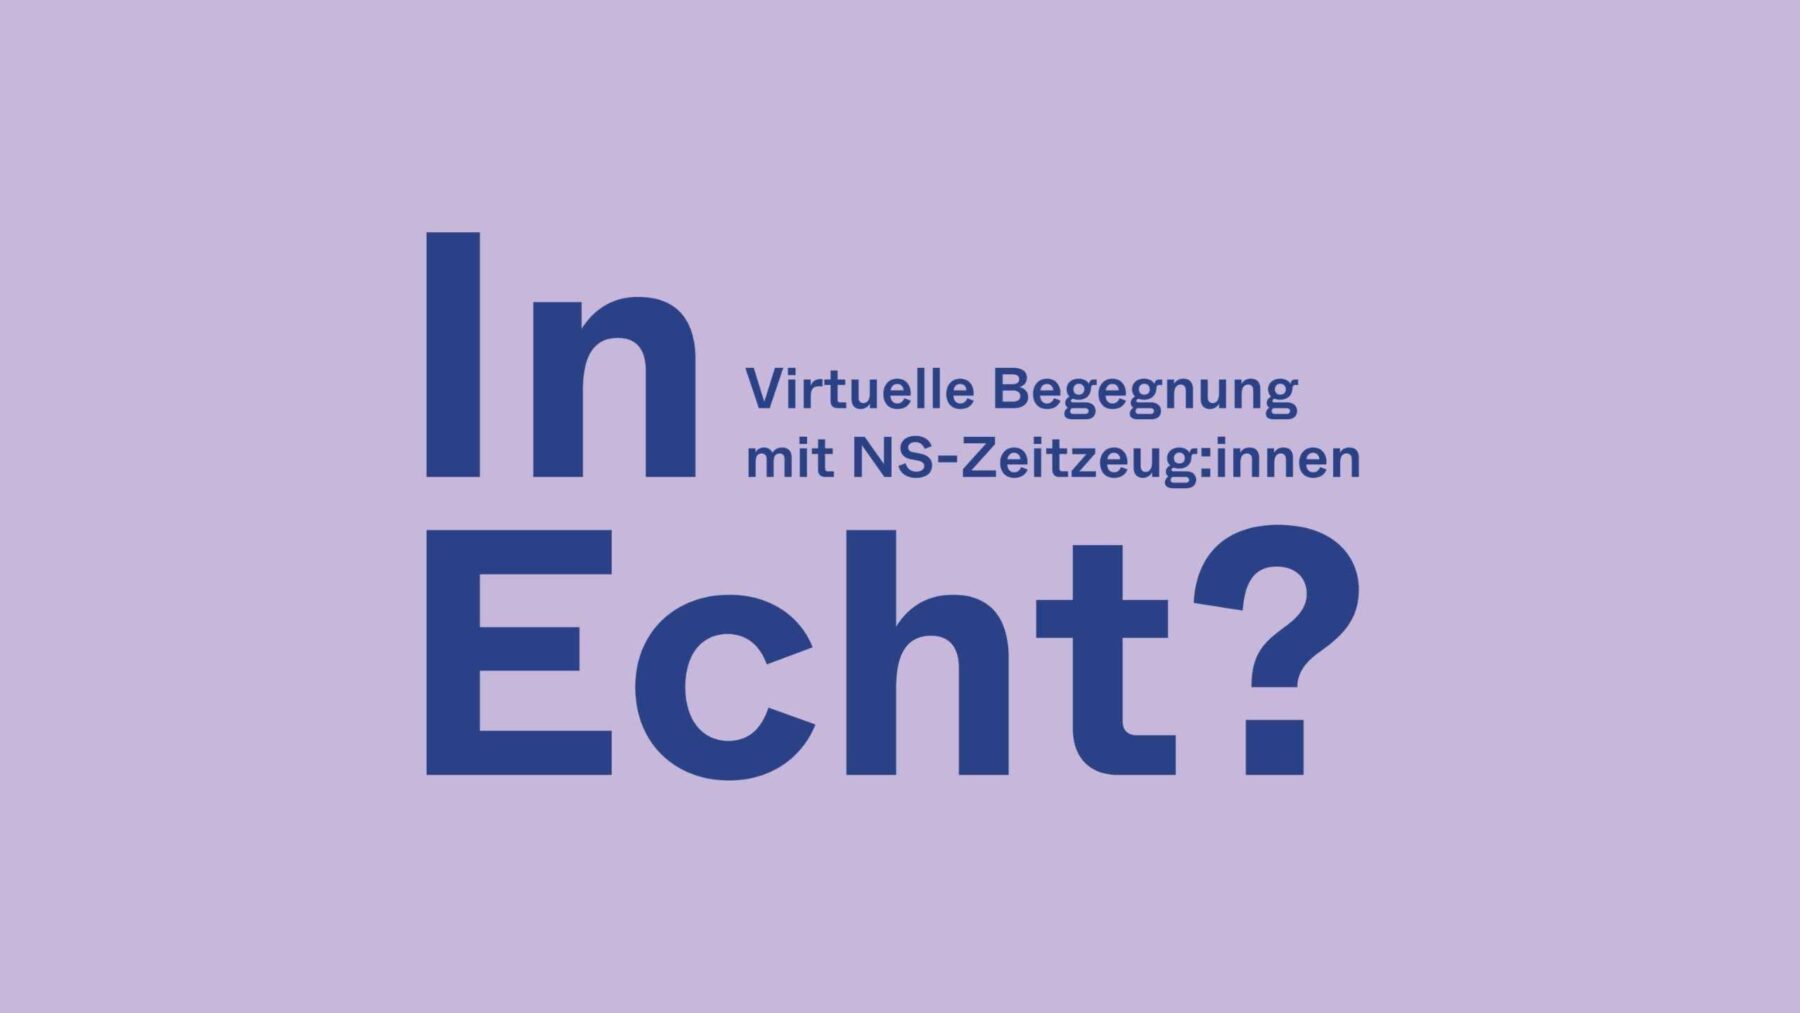 Wortmarke "In Echt - Virtuelle Begegnungen mit NS-Zeitzeug:innen"